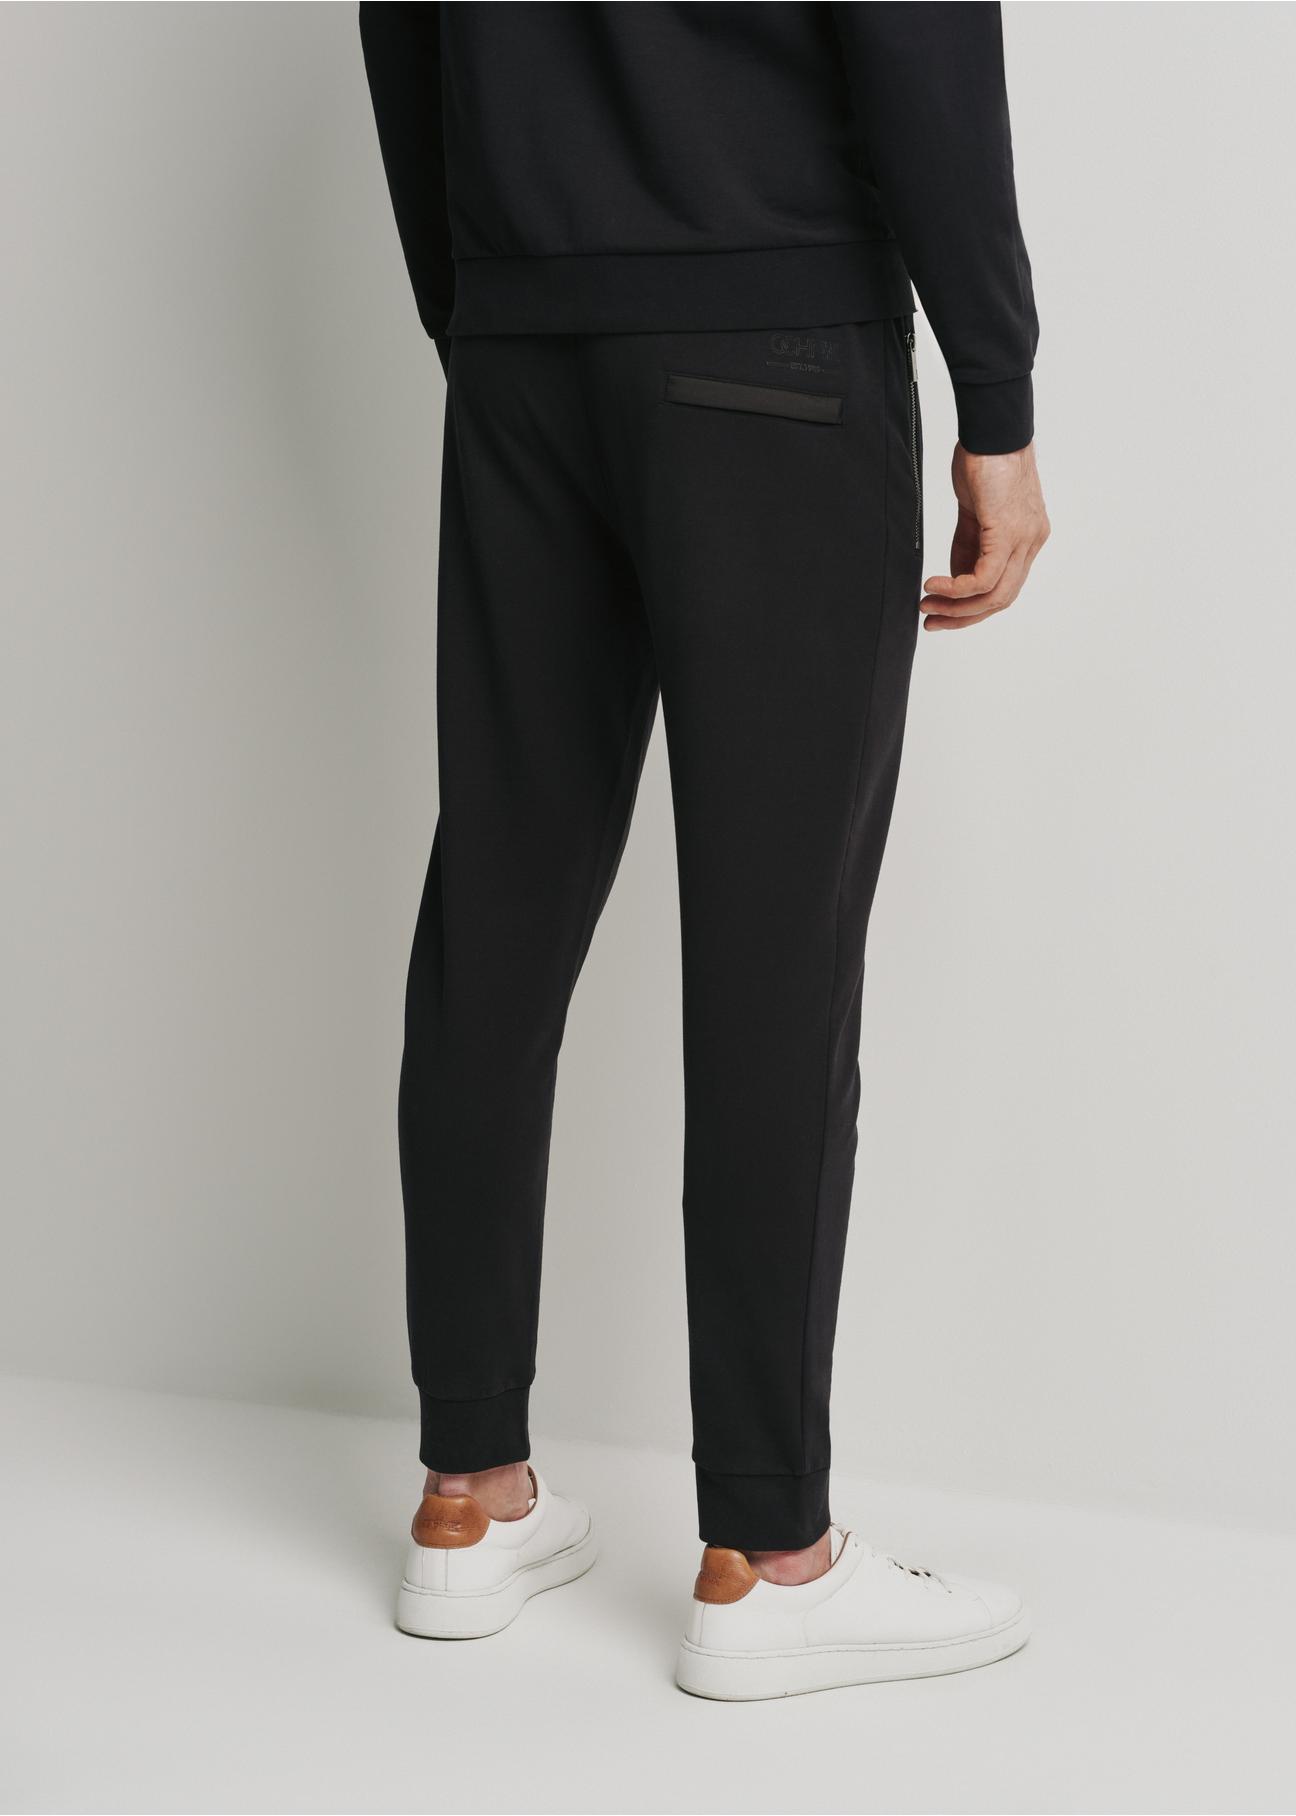 Czarne spodnie dresowe męskie SPOMT-0092-99(W24)